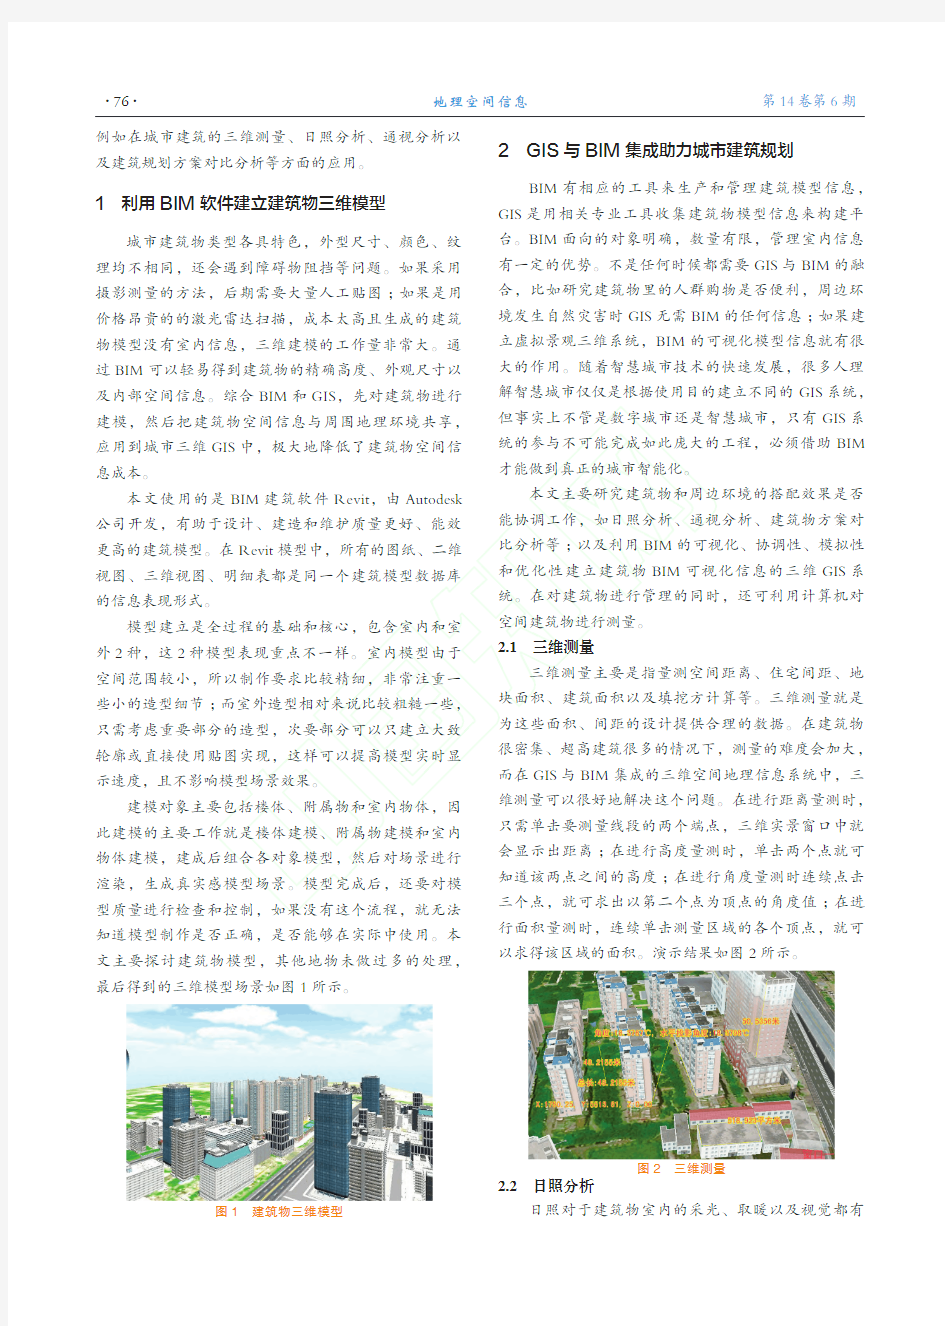 GIS与BIM集成在城市建筑规划中的应用研究_王玲莉